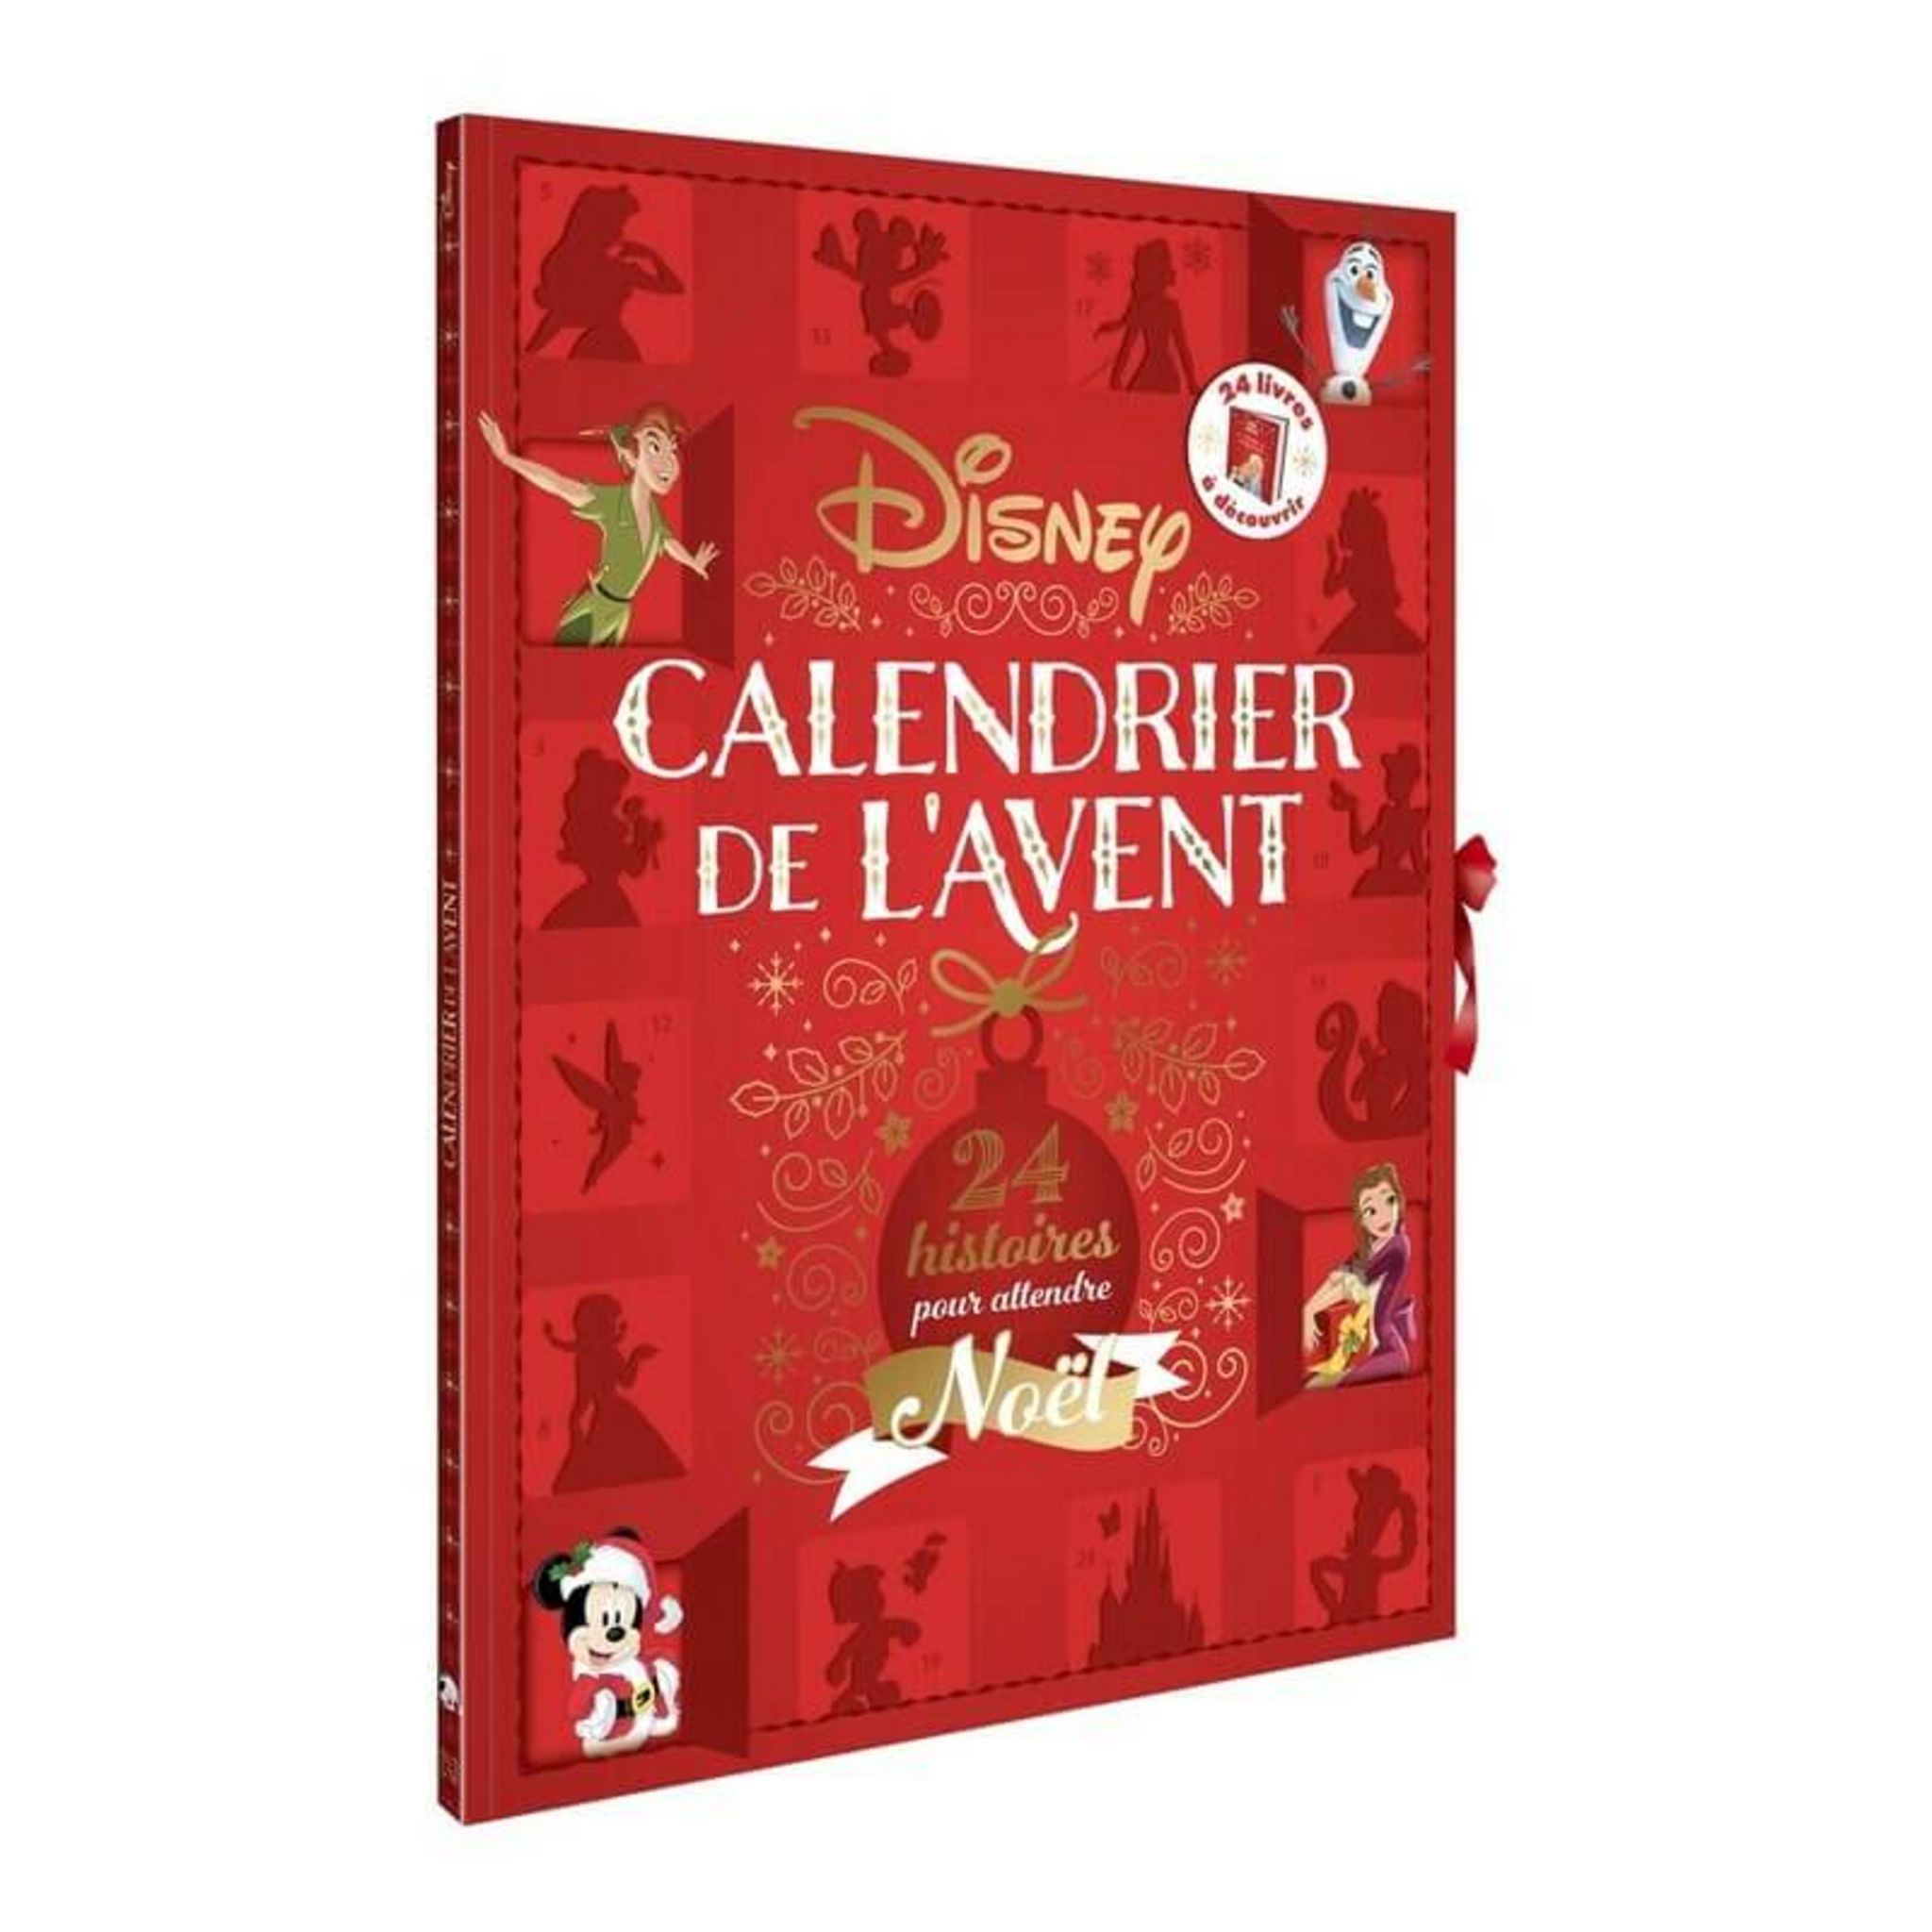 Disney-Princesses Disney-Calendrier De L’Avent 24 Surprises